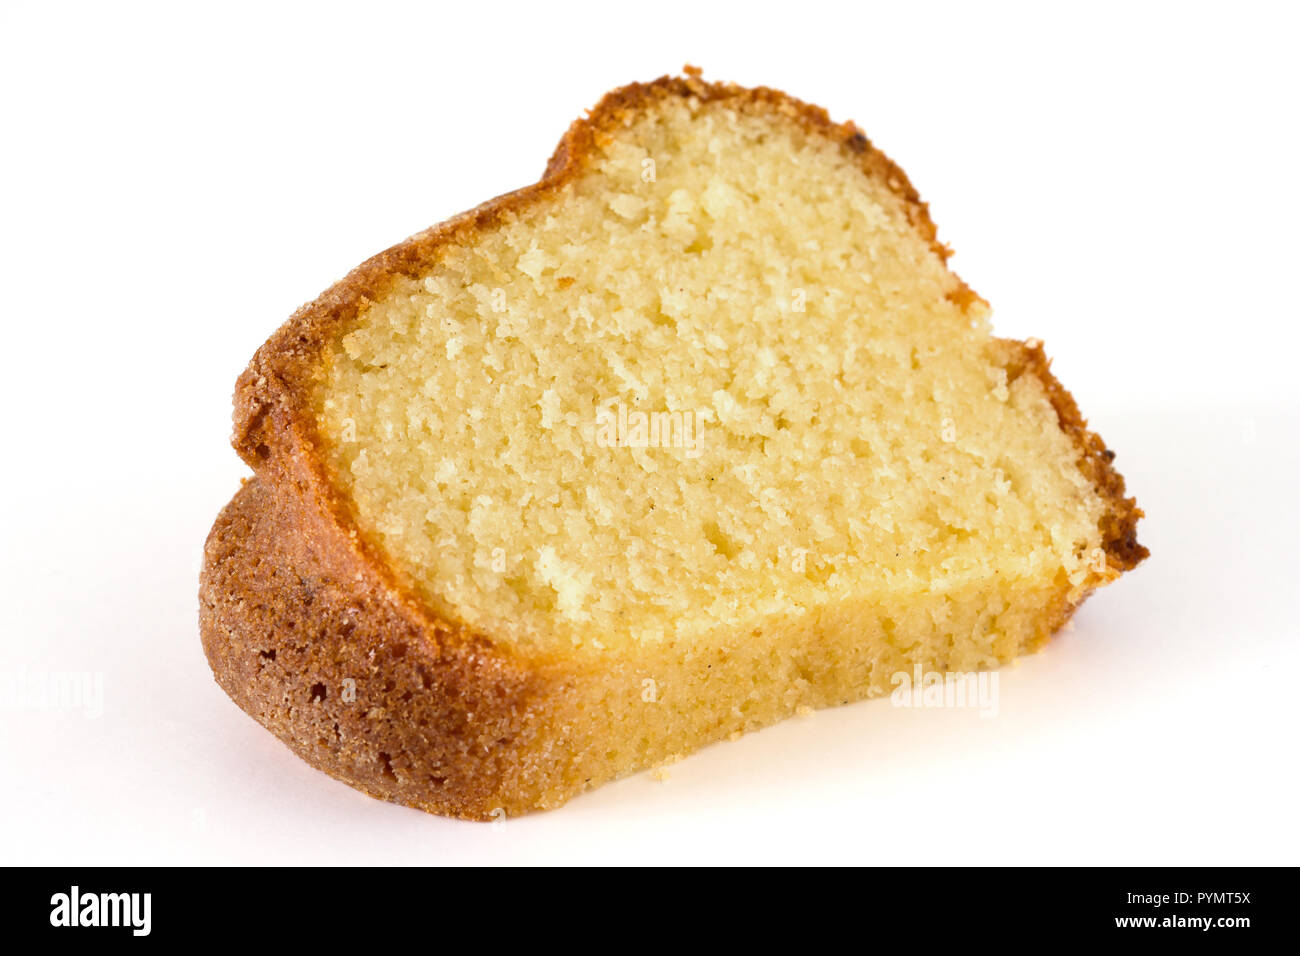 sponge, madeira or pound cake on white Stock Photo